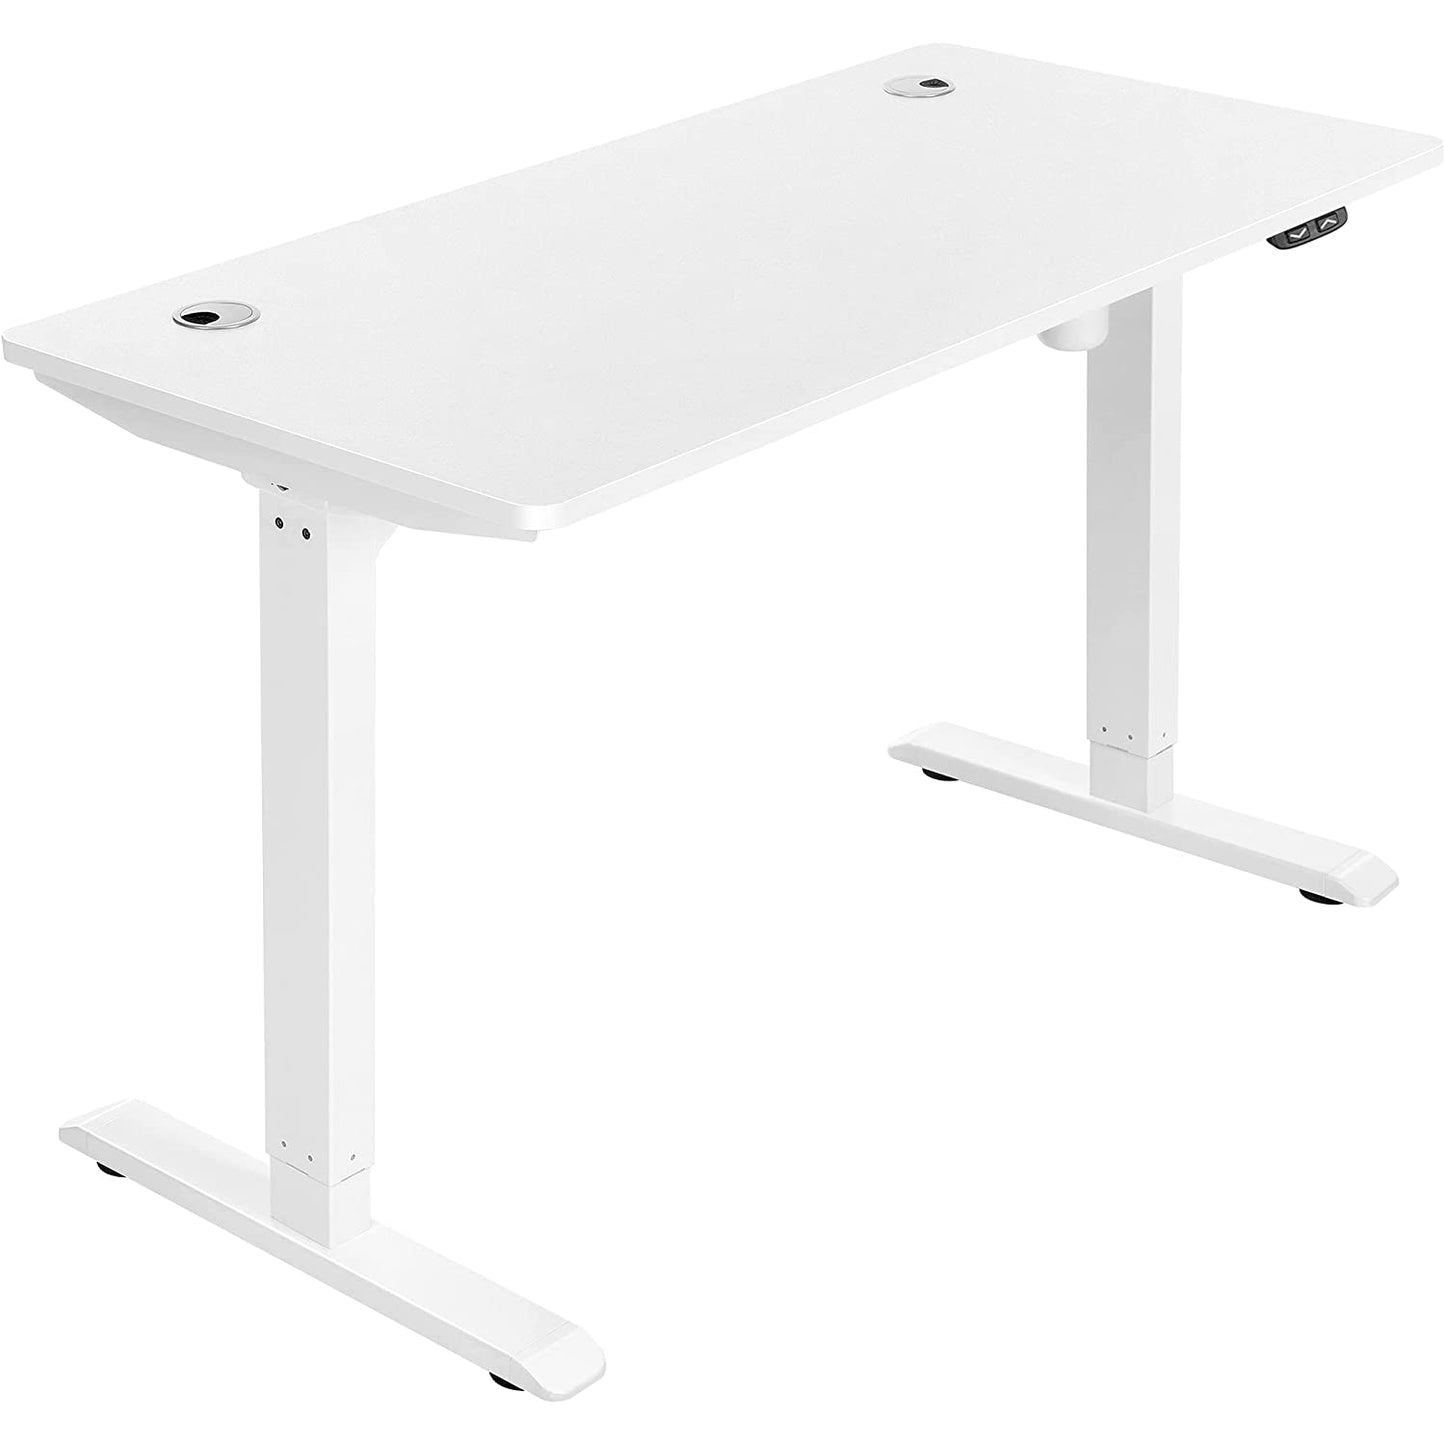 Bureau Nancy's Gaskiers - Hauteur réglable - Table assis-debout - Automatique - Gestion des câbles - Table de bureau - Noir/Blanc - MDF - Acier - 120 x 60 x (73-114)